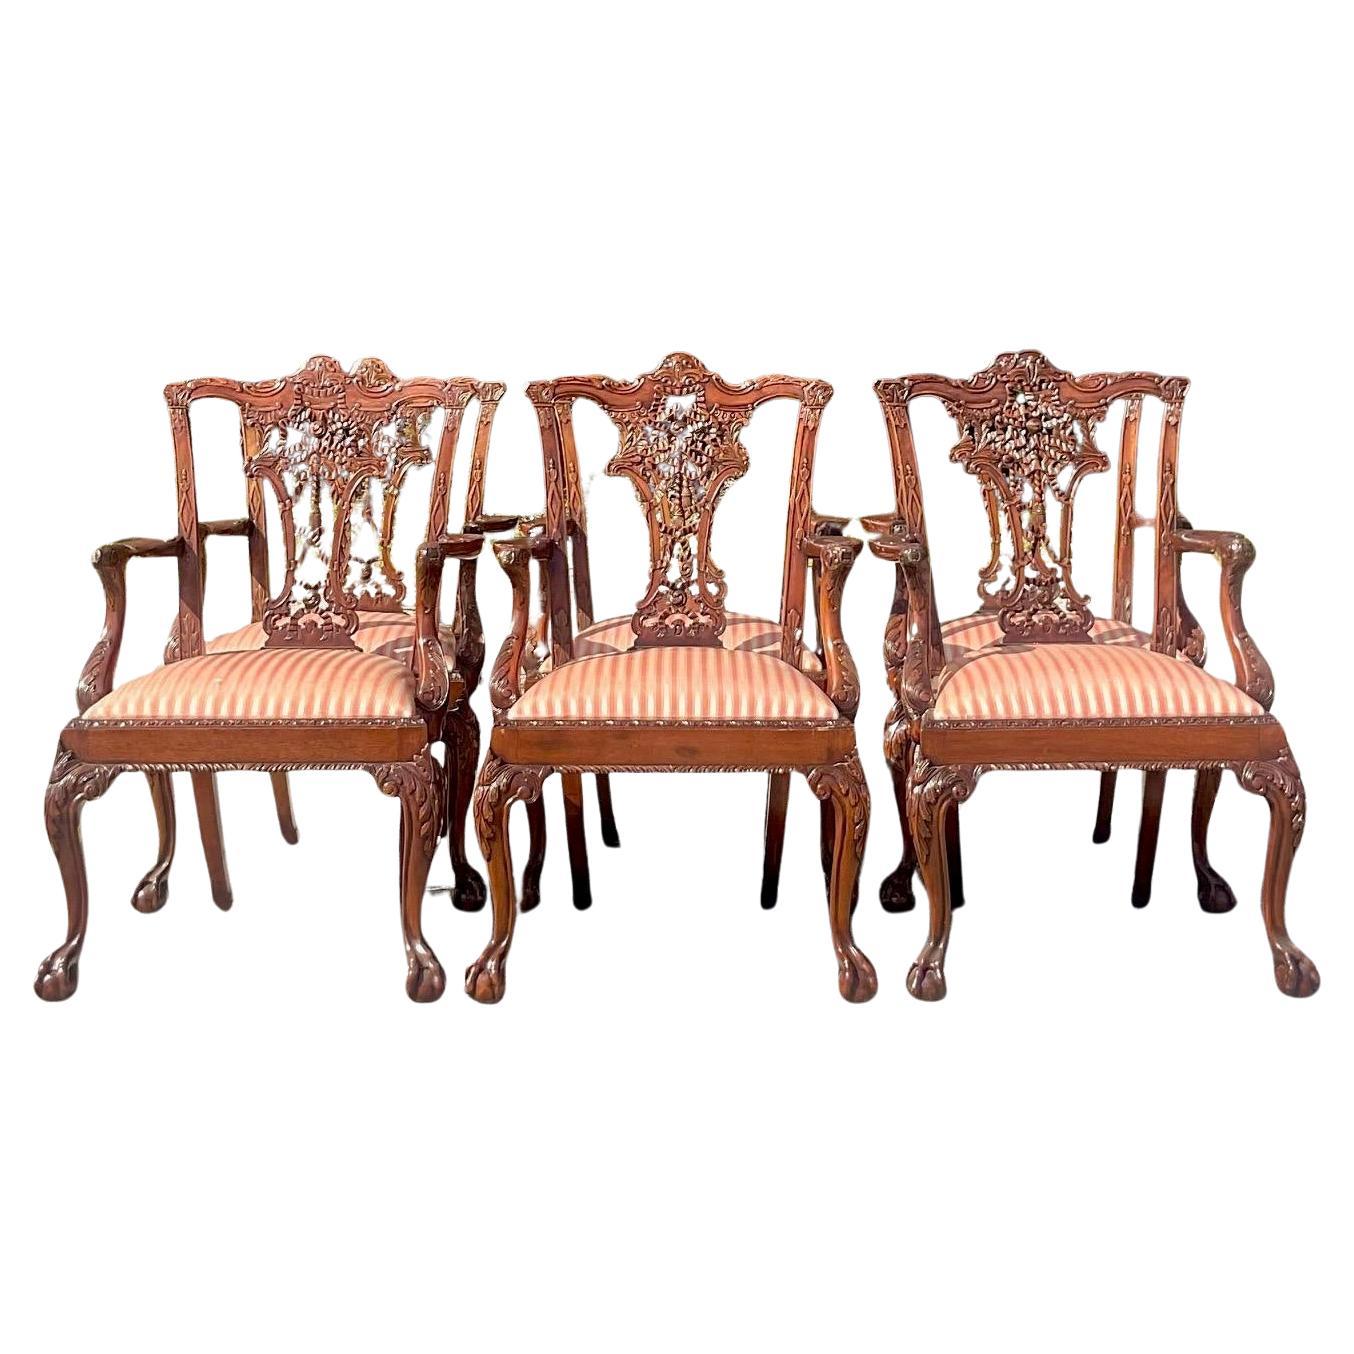 Vintage Regency geschnitzte Chippendale-Esszimmerstühle im Regency-Stil - Sechser-Set